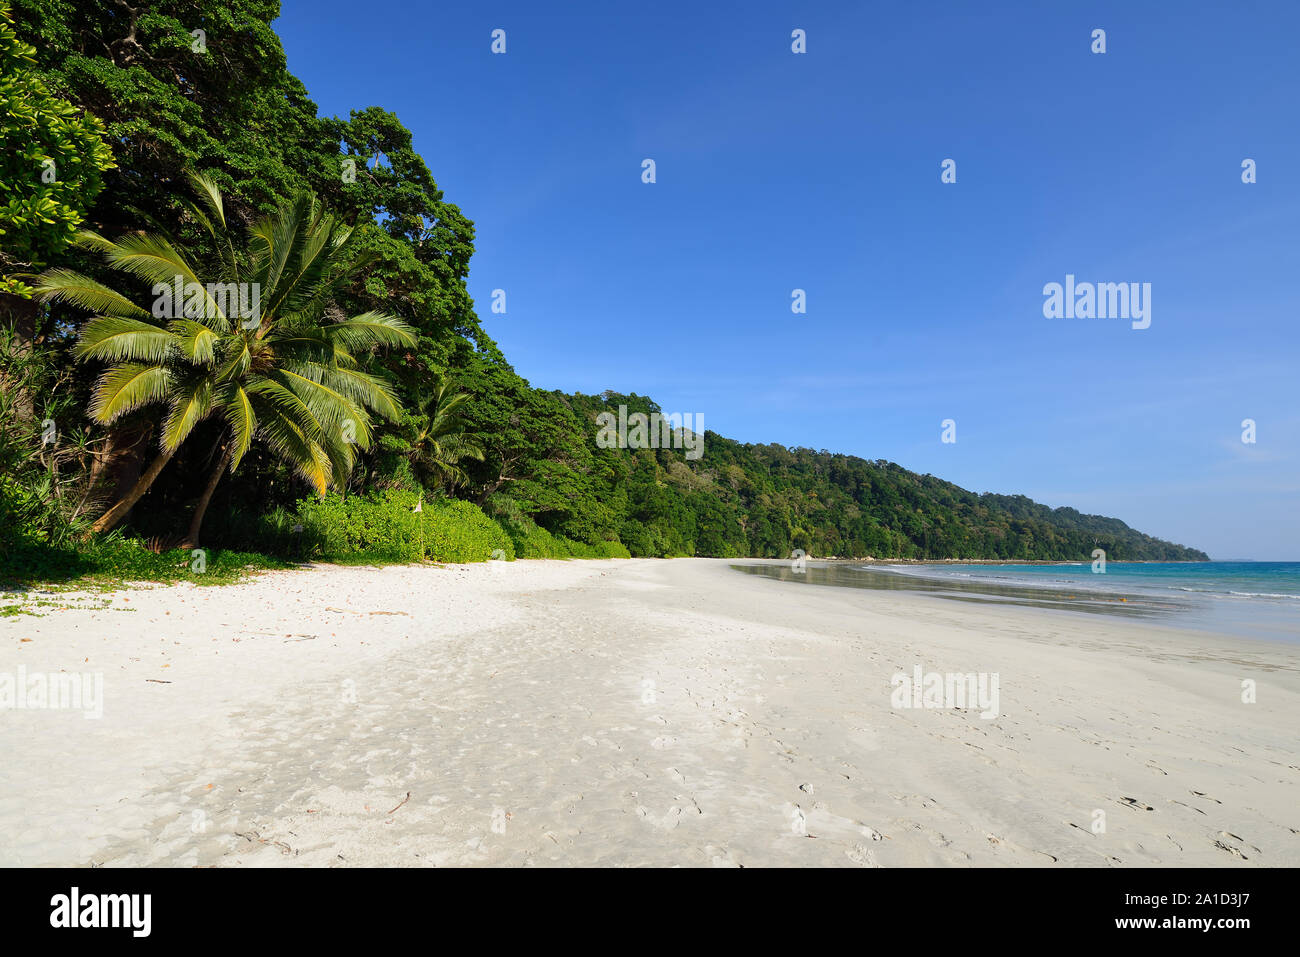 Beach nr 7 at Havelock Island, Andaman and Nicobar Islands, India Stock Photo